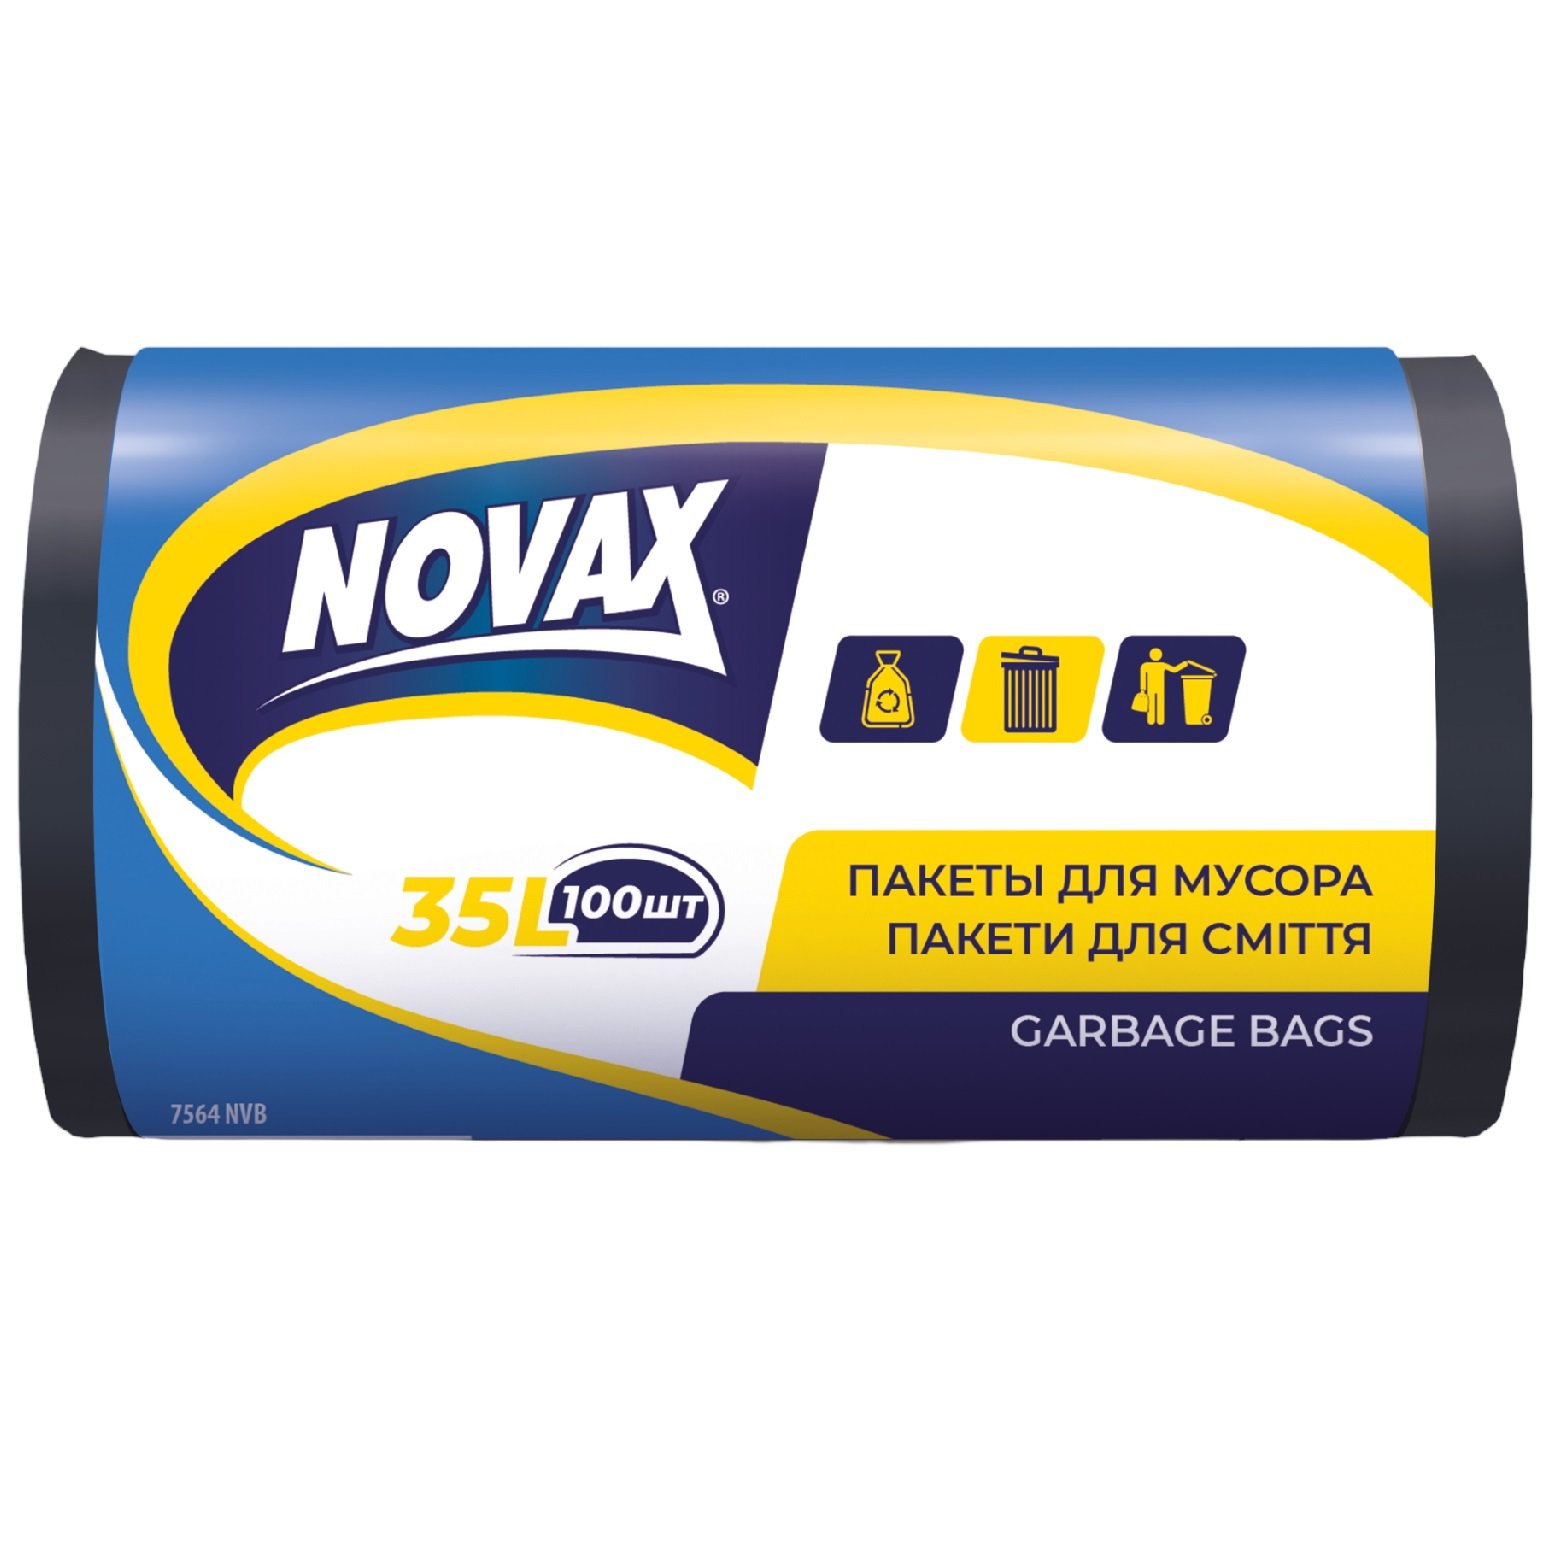 Сміттєві пакети Novax, 35 л, 100 шт., чорні - фото 1